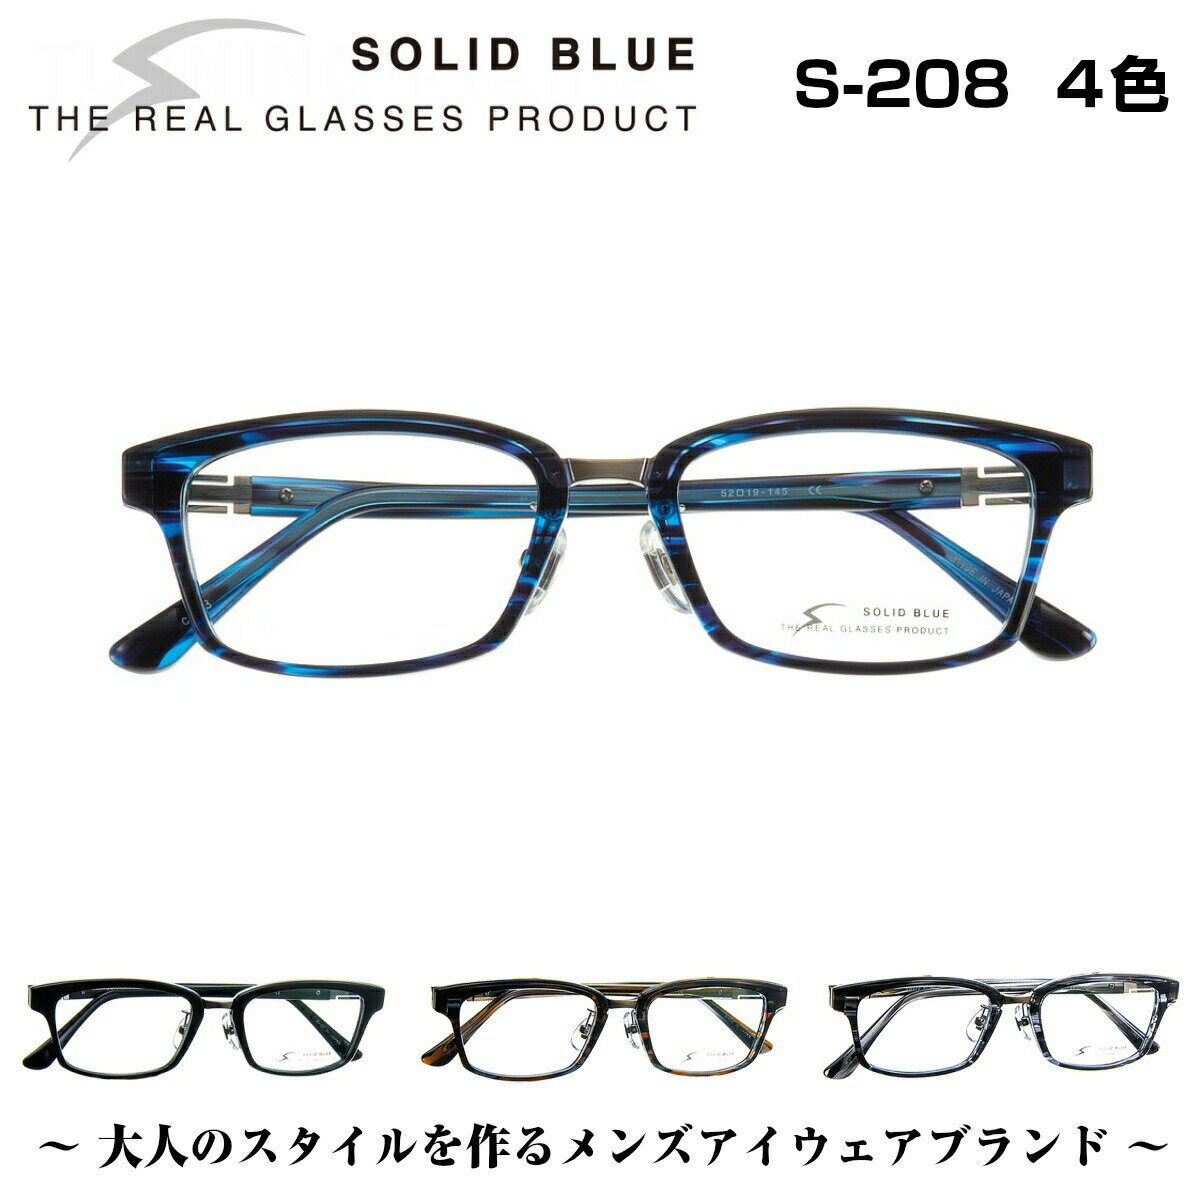 ソリッドブルー SOLID BLUE S-208 4色 男性 メンズ ビジネス フォーマル カジュアル セル メタル チタン コンビネーション メガネ フレーム 眼鏡 めがね 日本製 国産 鯖江 スクエア 軽い 軽量 正規品